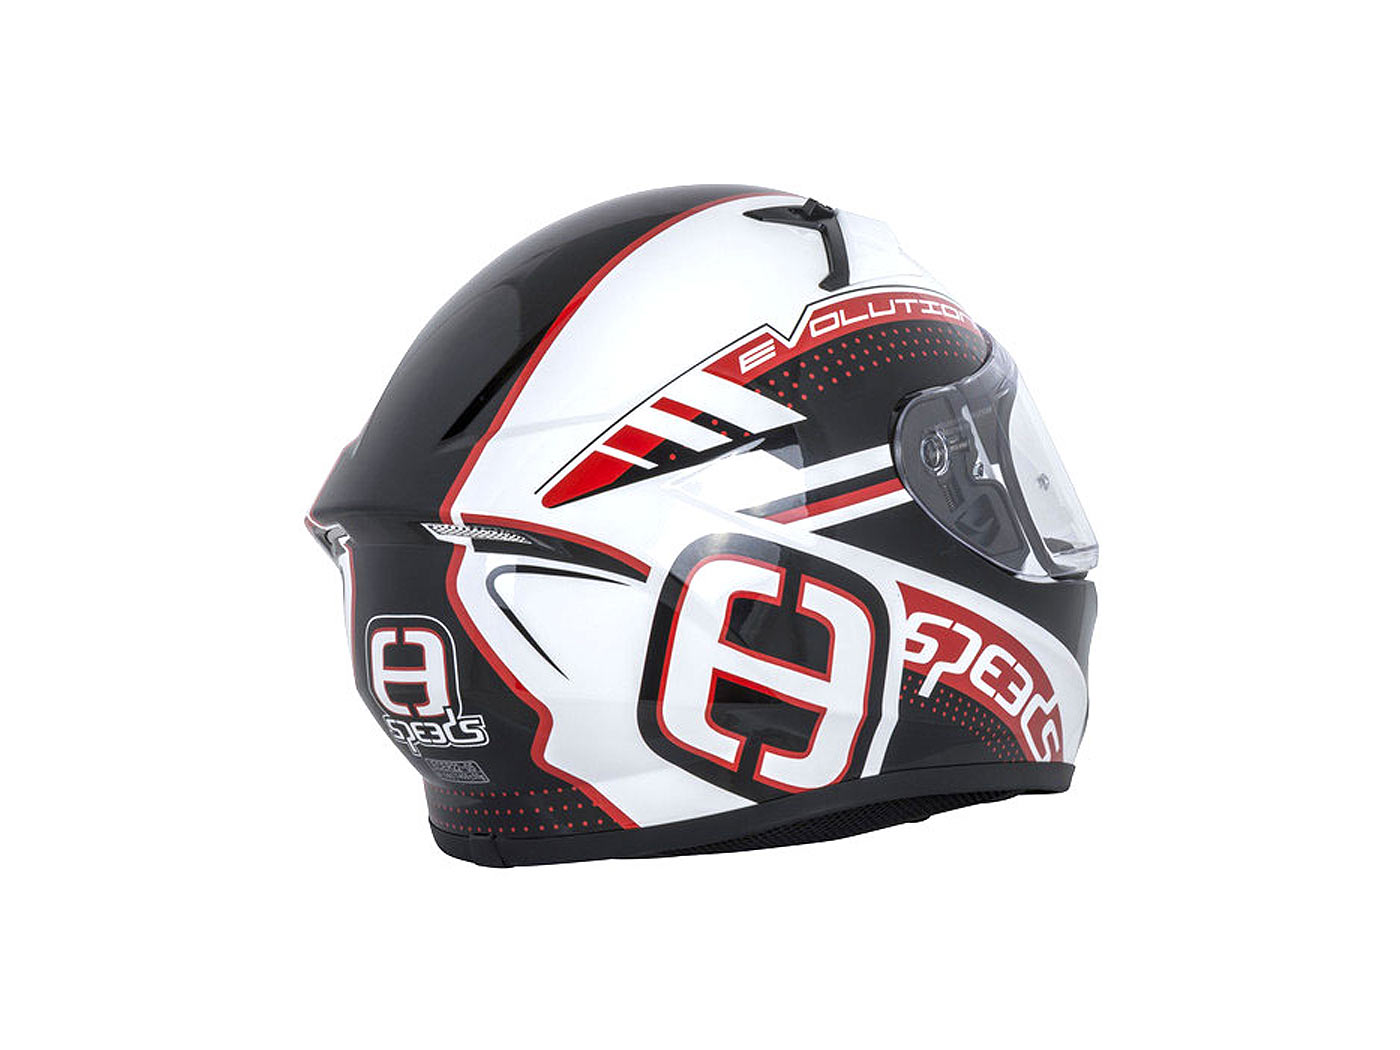 Helm Speeds Integral Evolution III weiß, schwarz, rot - verschiedene Größen